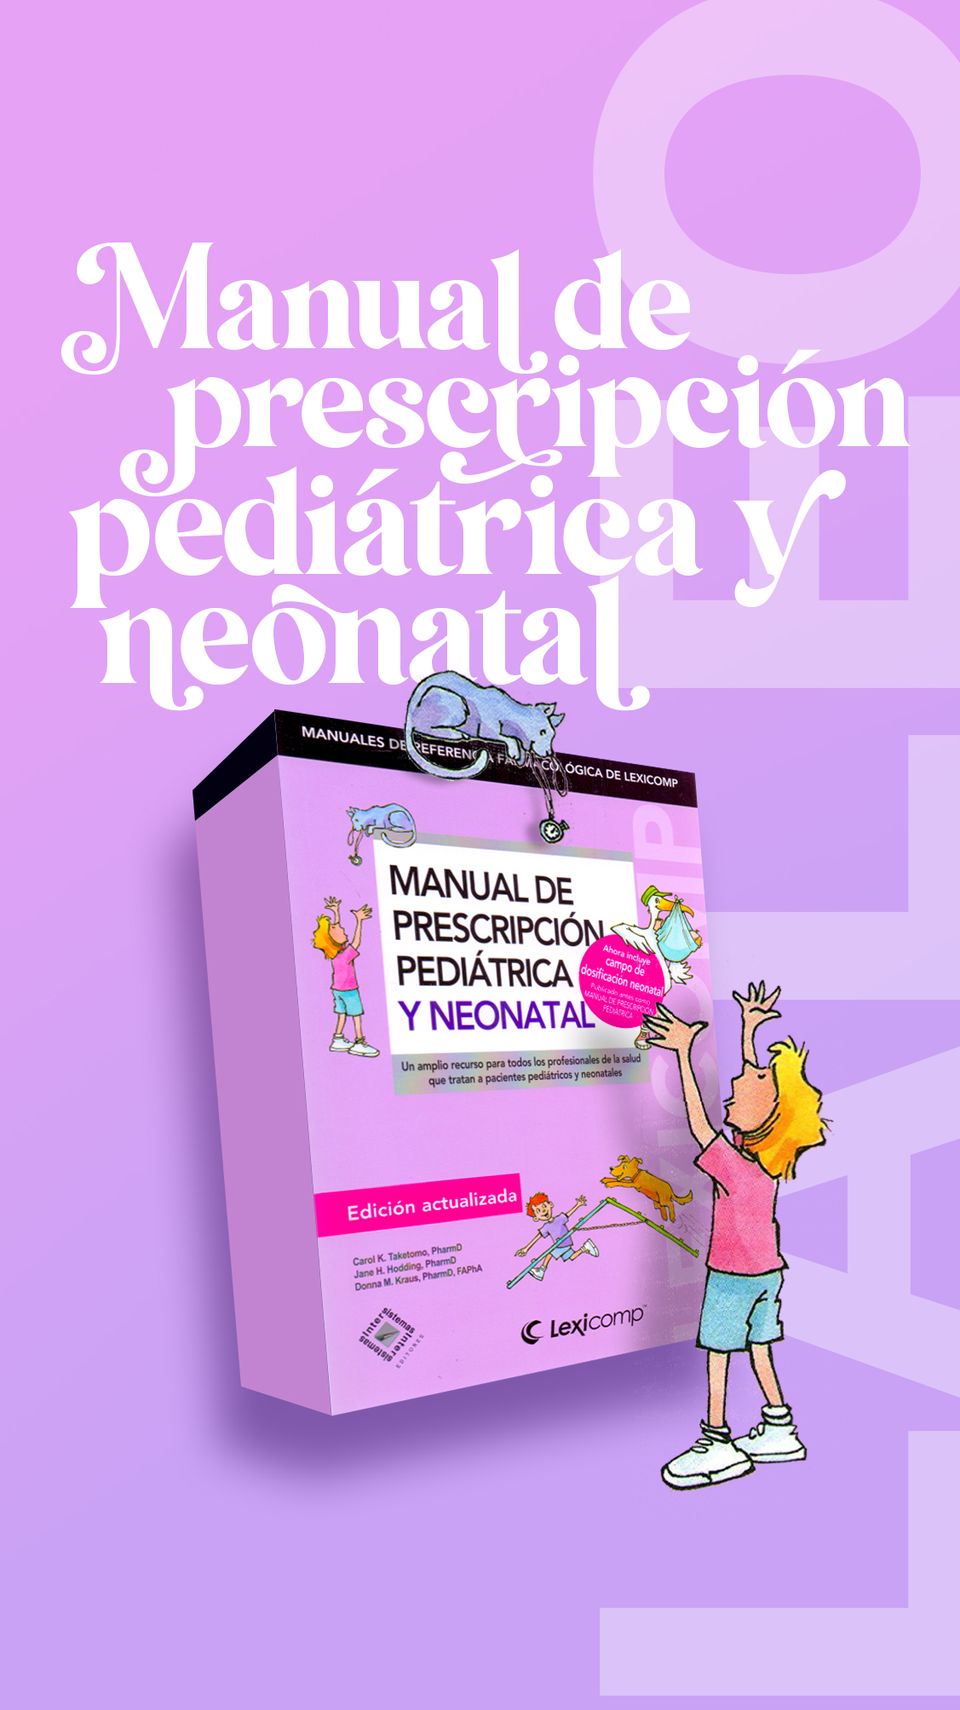 Manual de prescripción pediátrica y neonatal